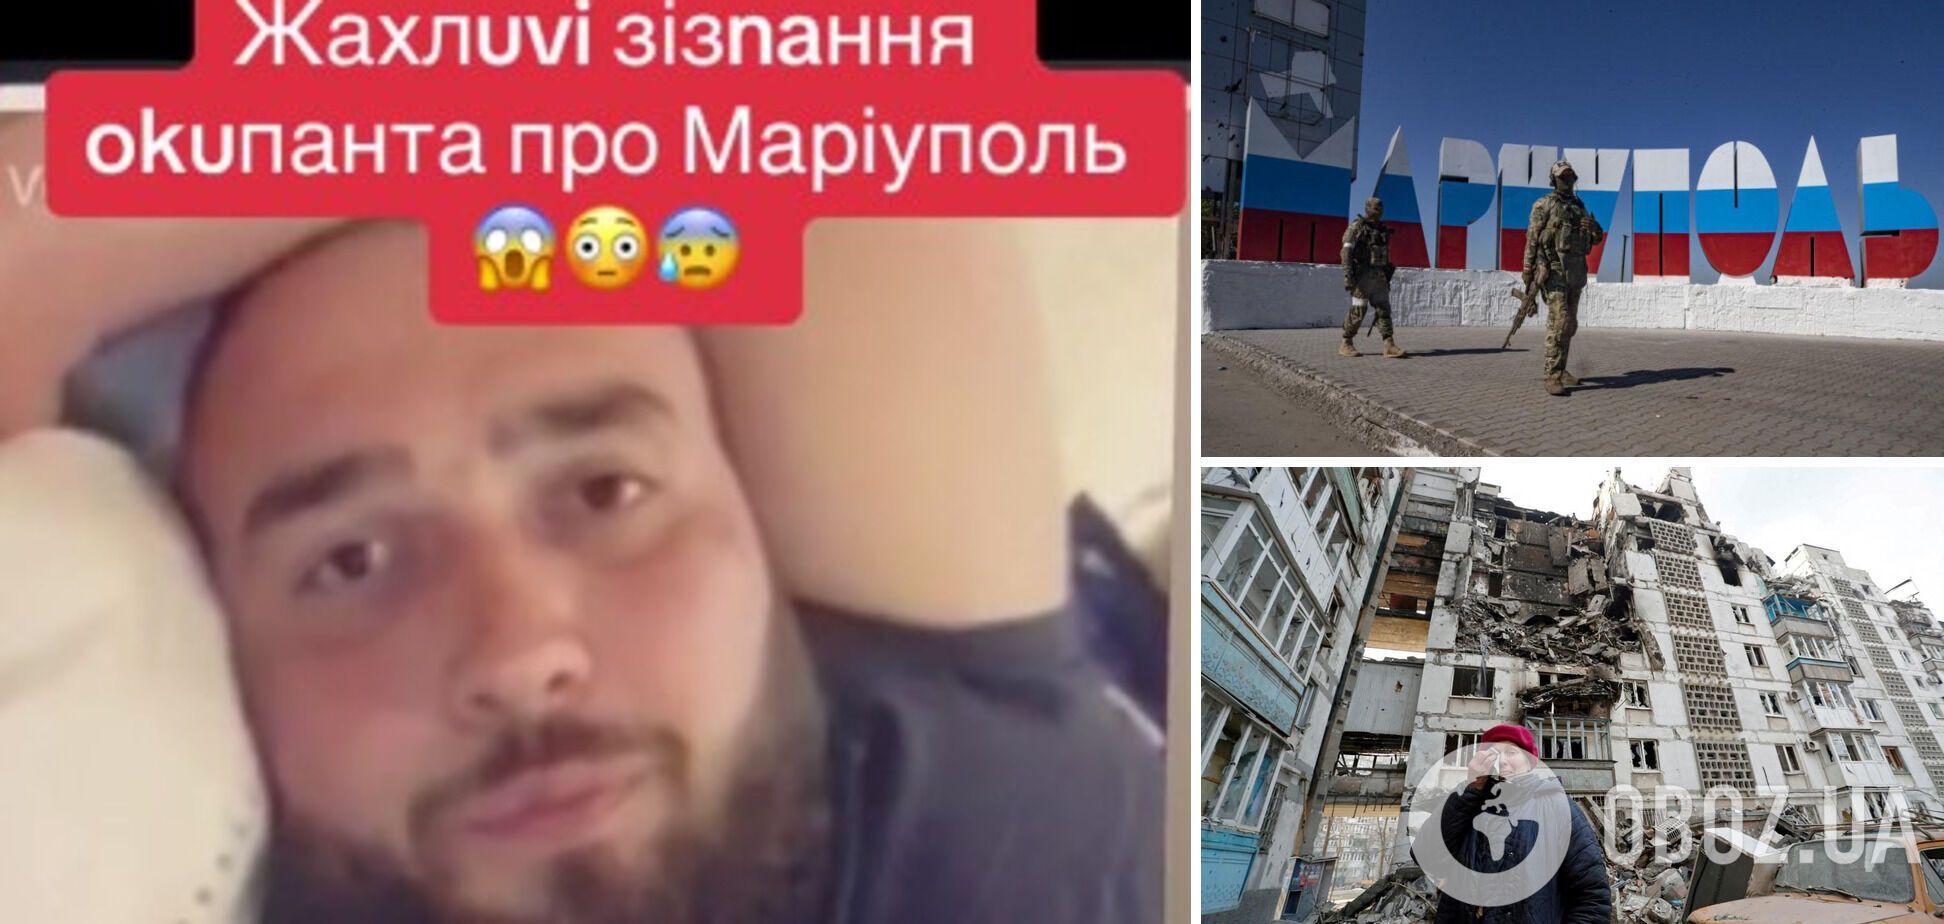 'Шкода не було': окупант зізнався у вбивстві українців у Маріуполі і заявив, що не рахував жертв. Відео